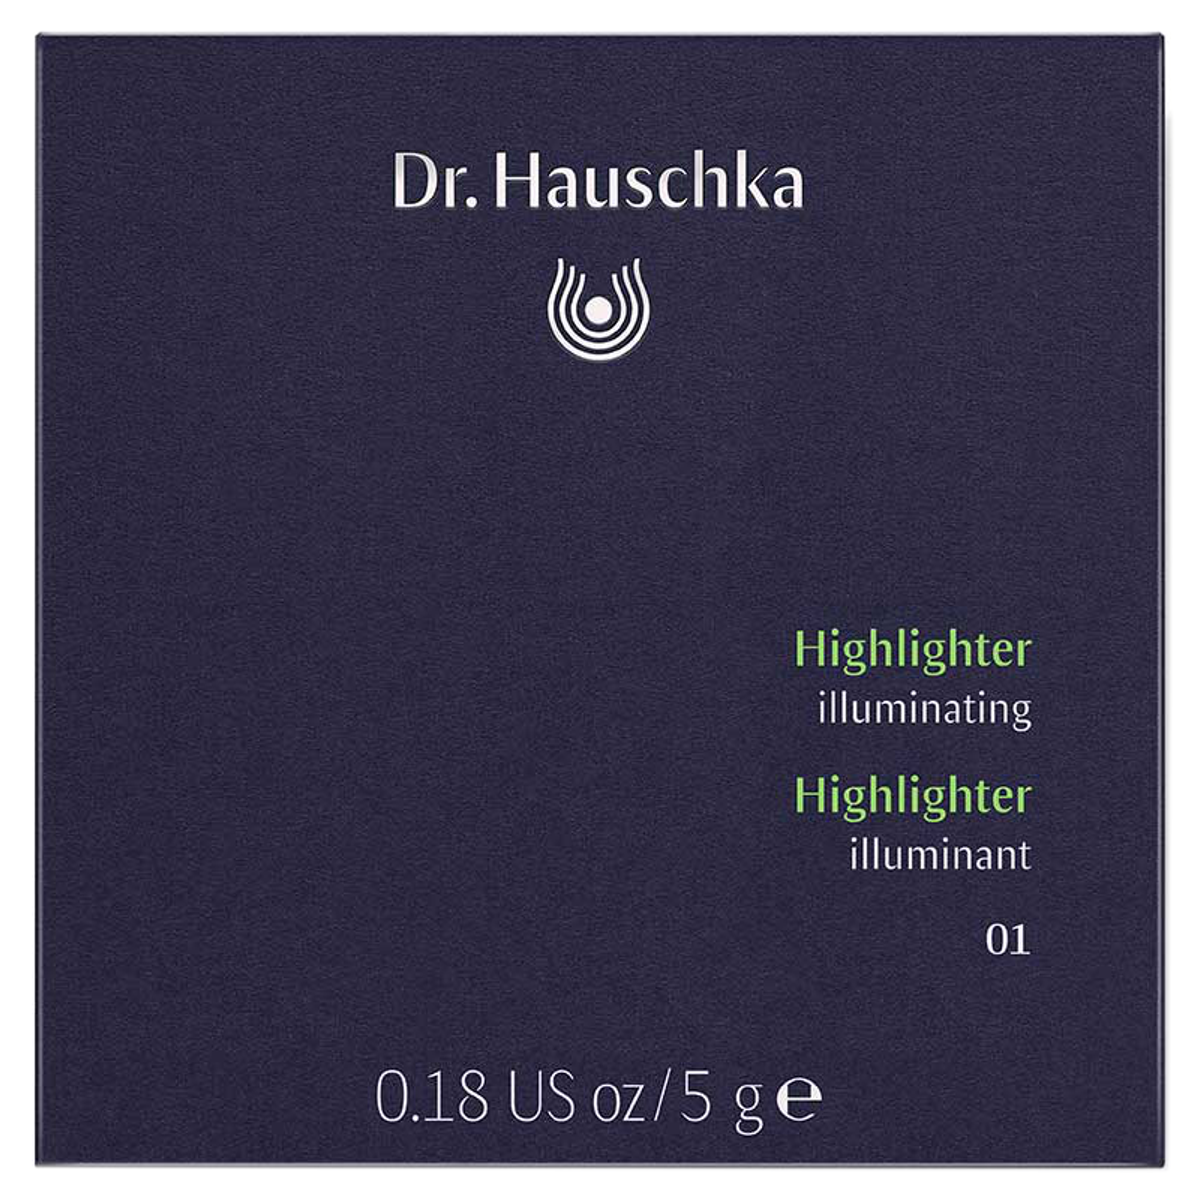 Dr Hauschka Highlighter 01 illuminating Dose 5 g